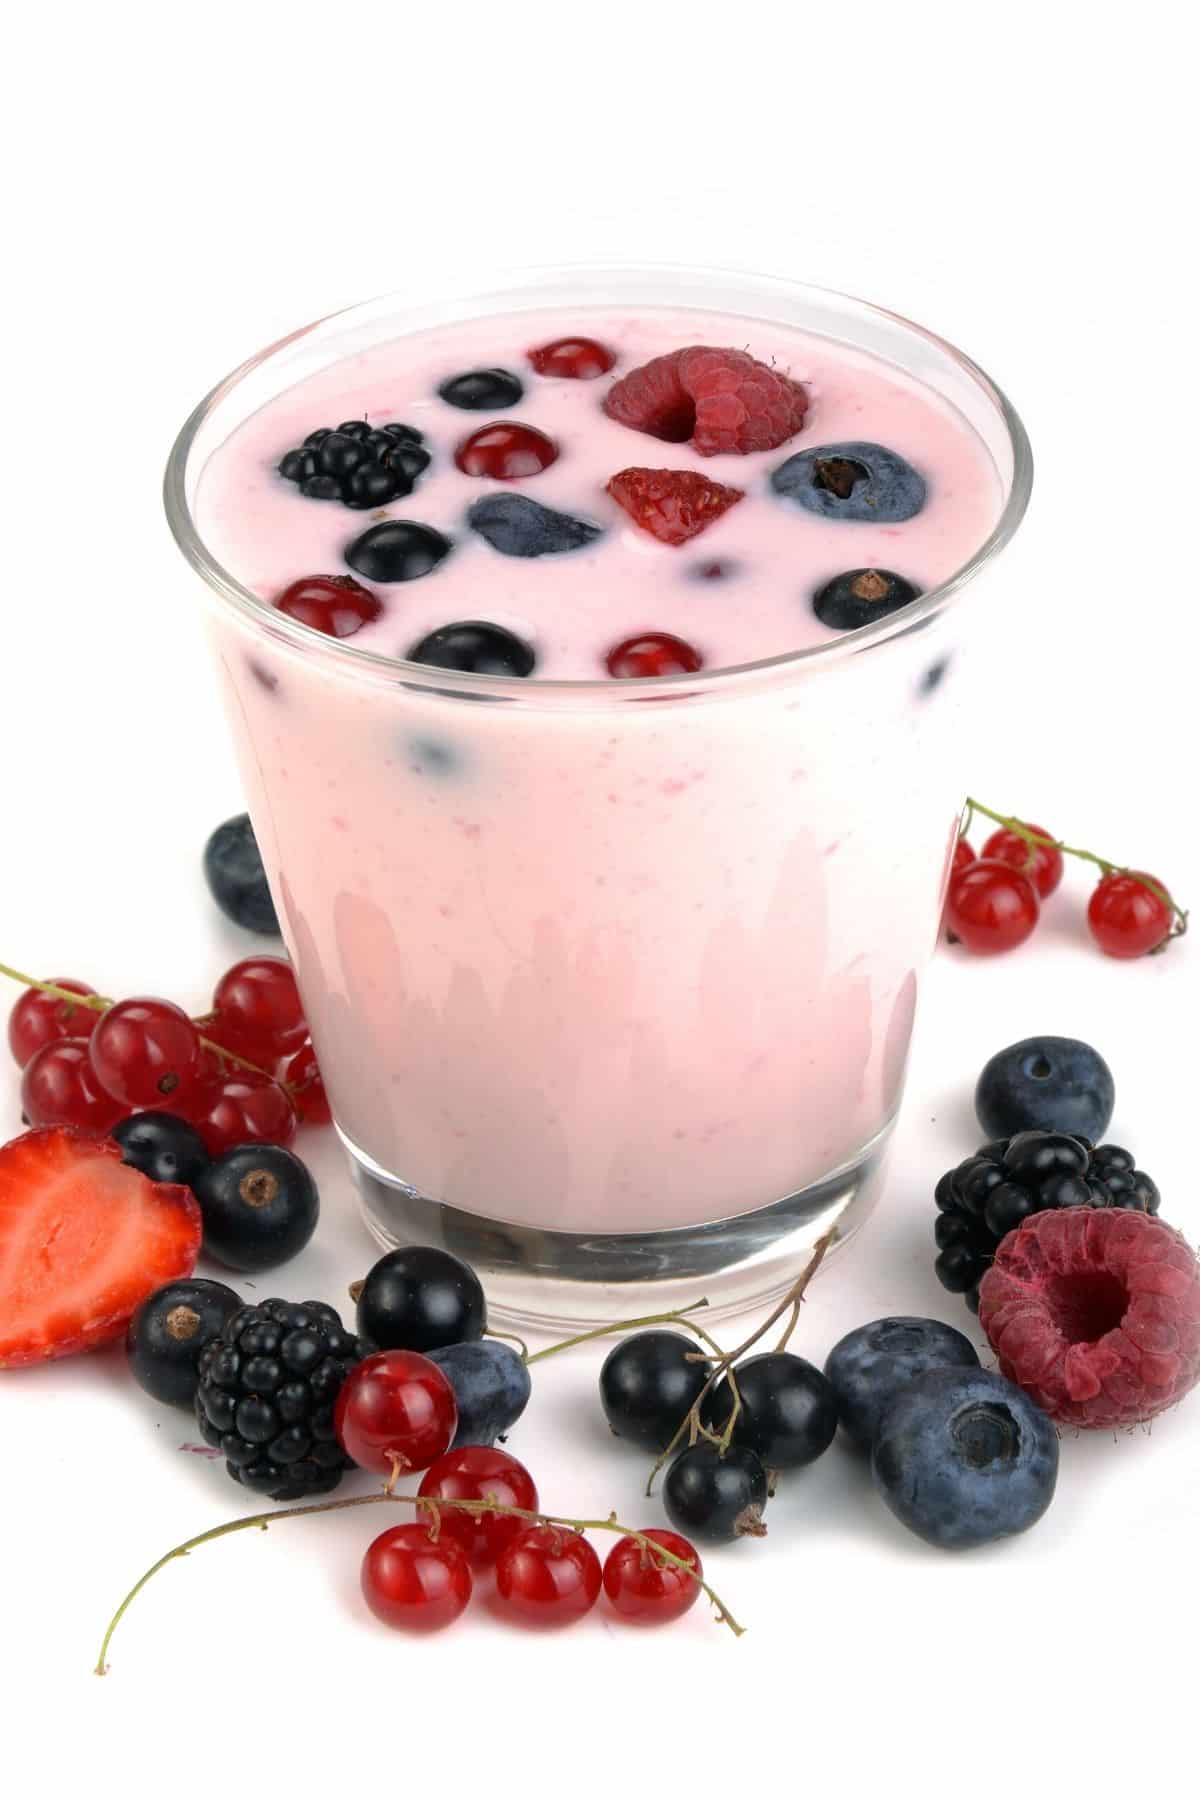 yogurt with berries.